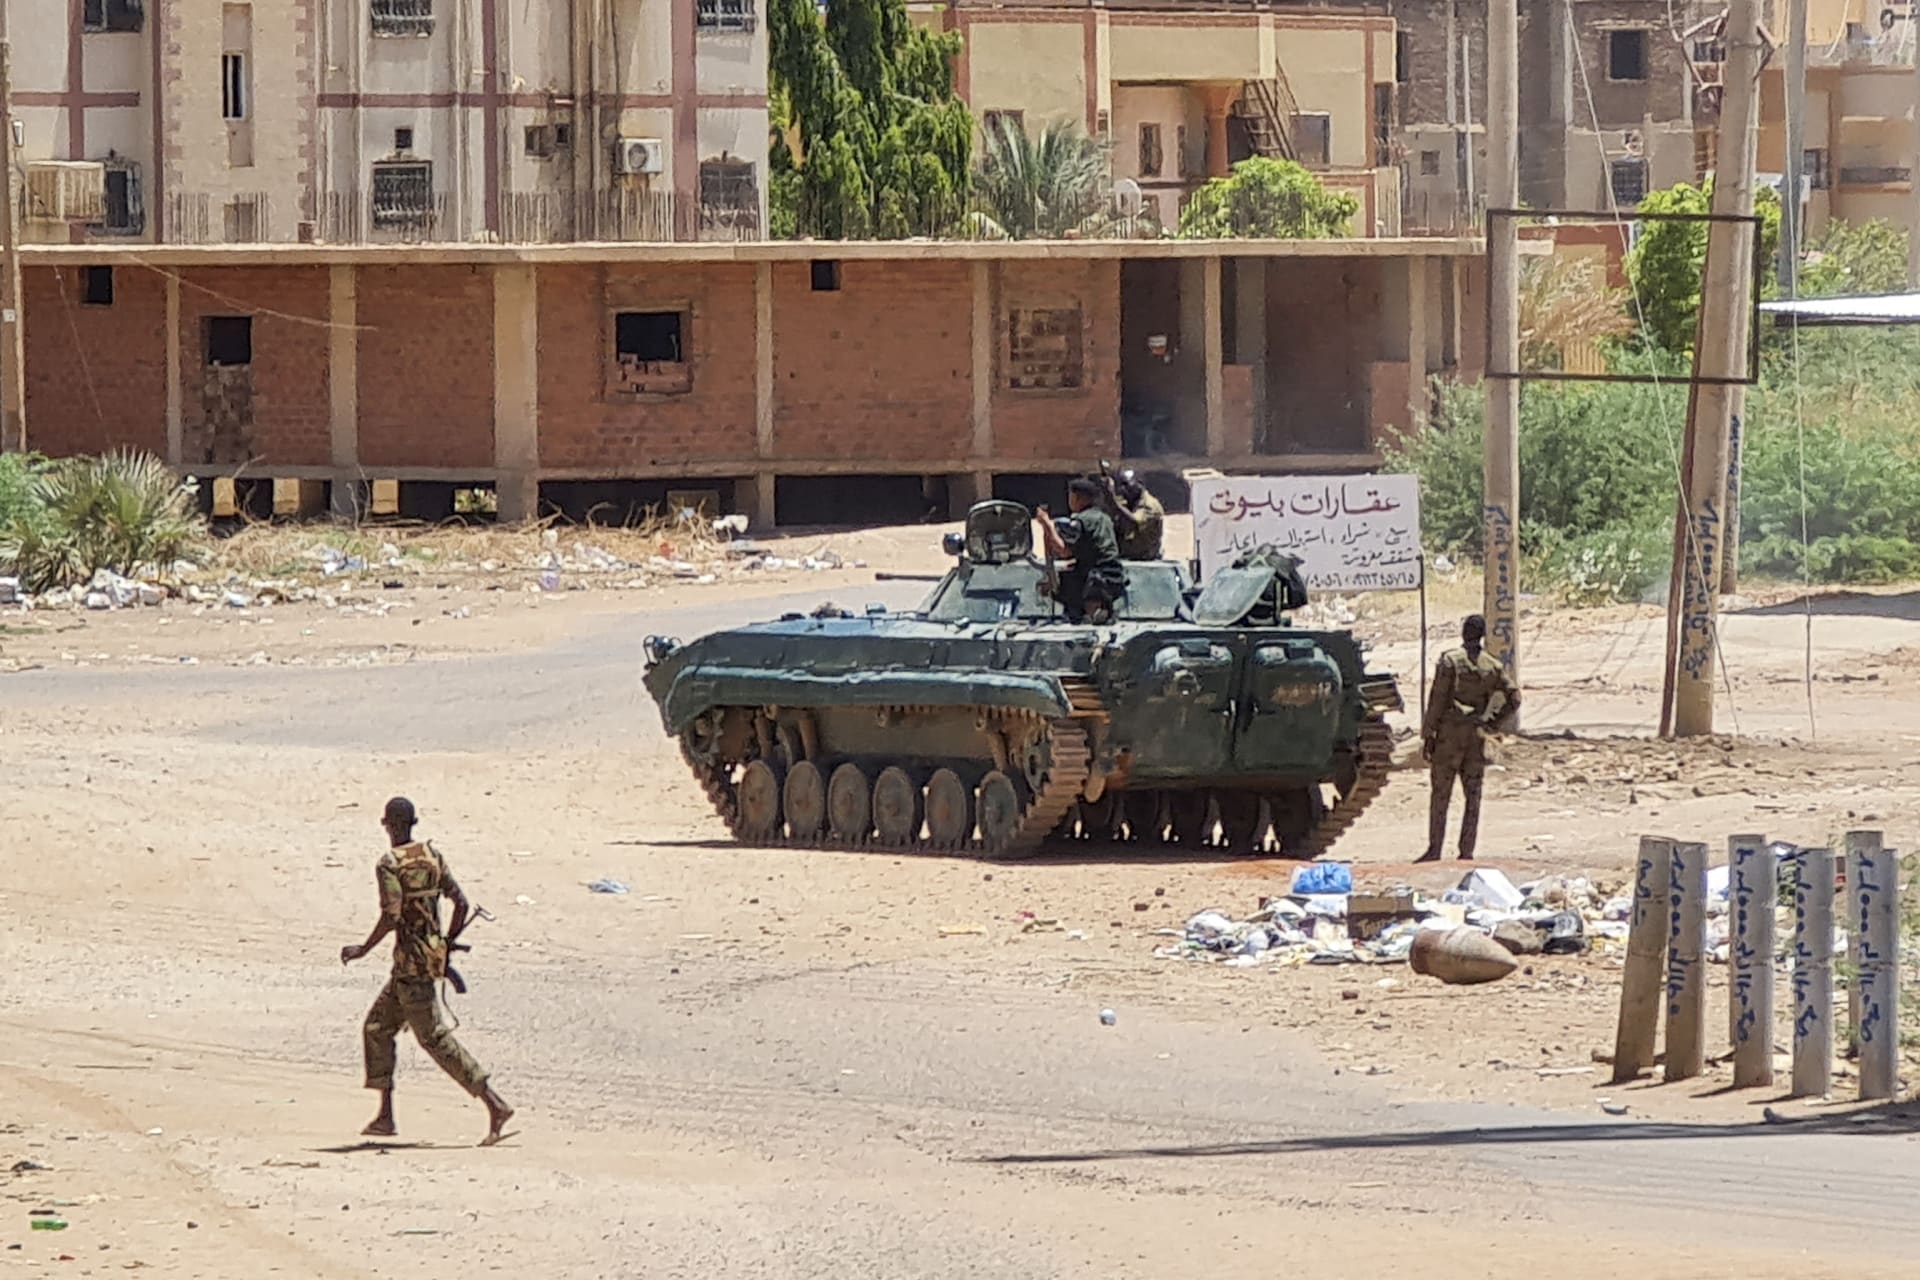 الحكومة السودانية تعرض العفو عن قوات "الدعم السريع" إذا تخلت عن سلاحها